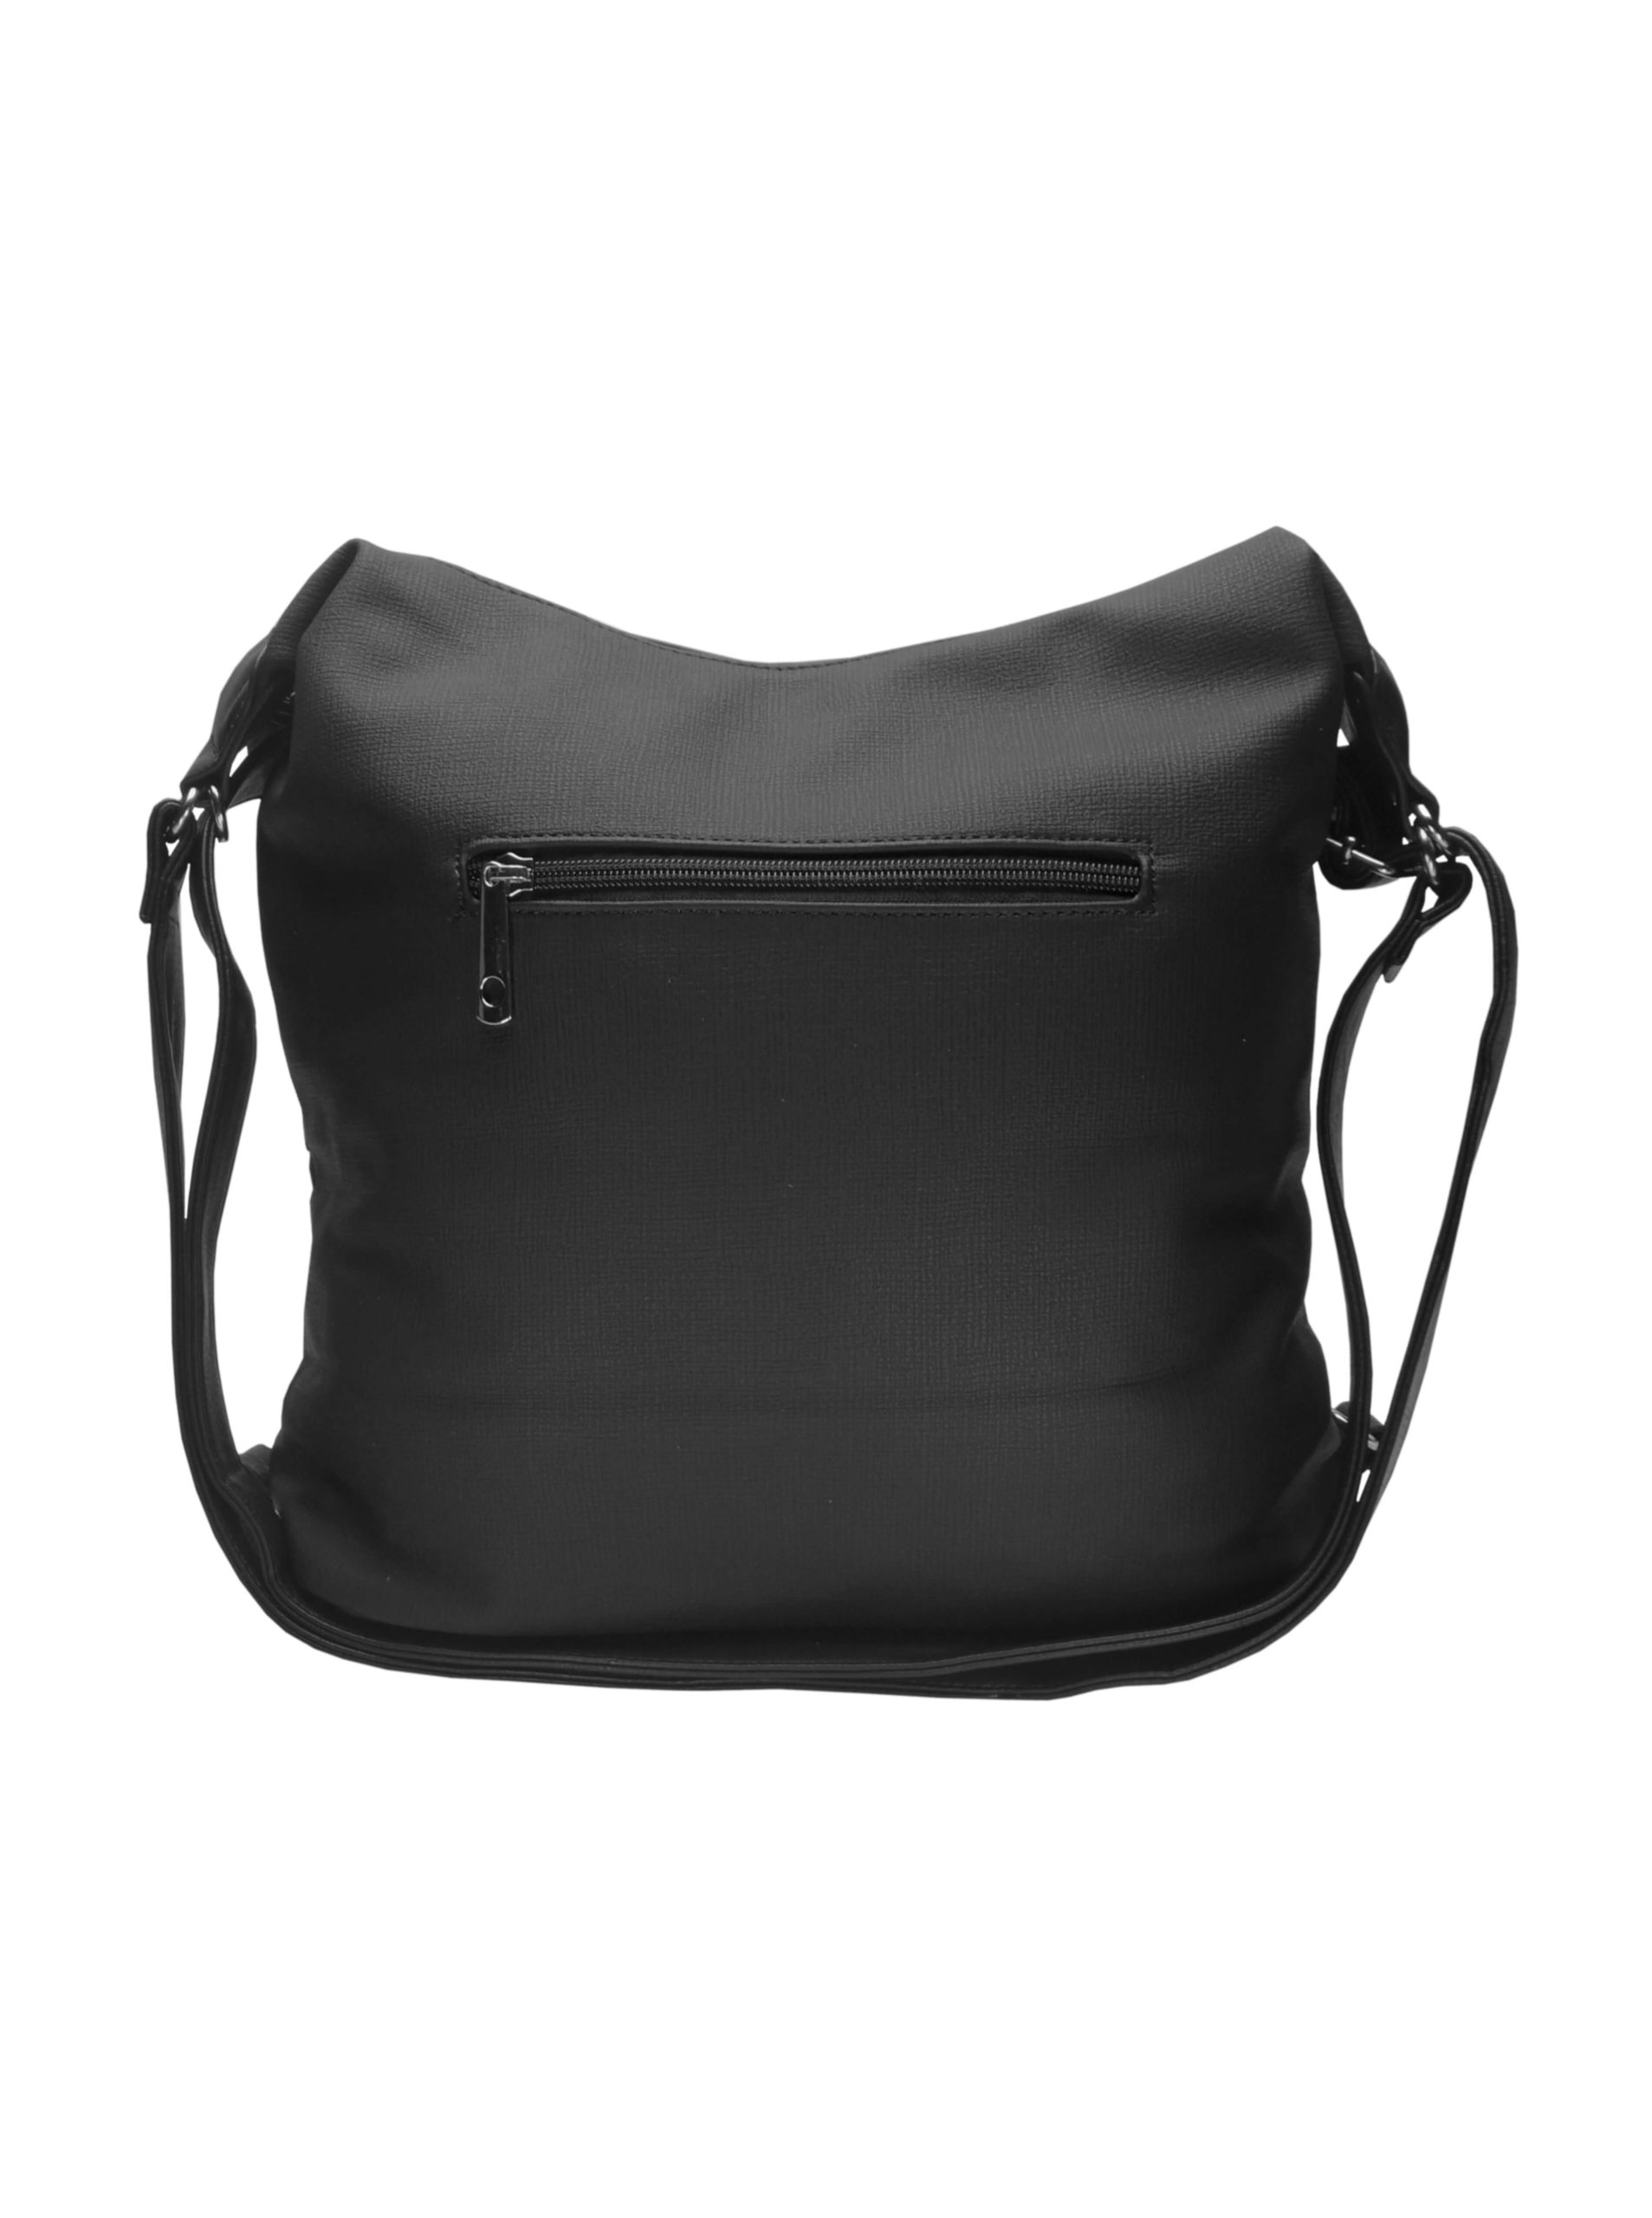 Velký černý kabelko-batoh z eko kůže, Tapple, H18076, zadní strana kabelko-batohu 2v1